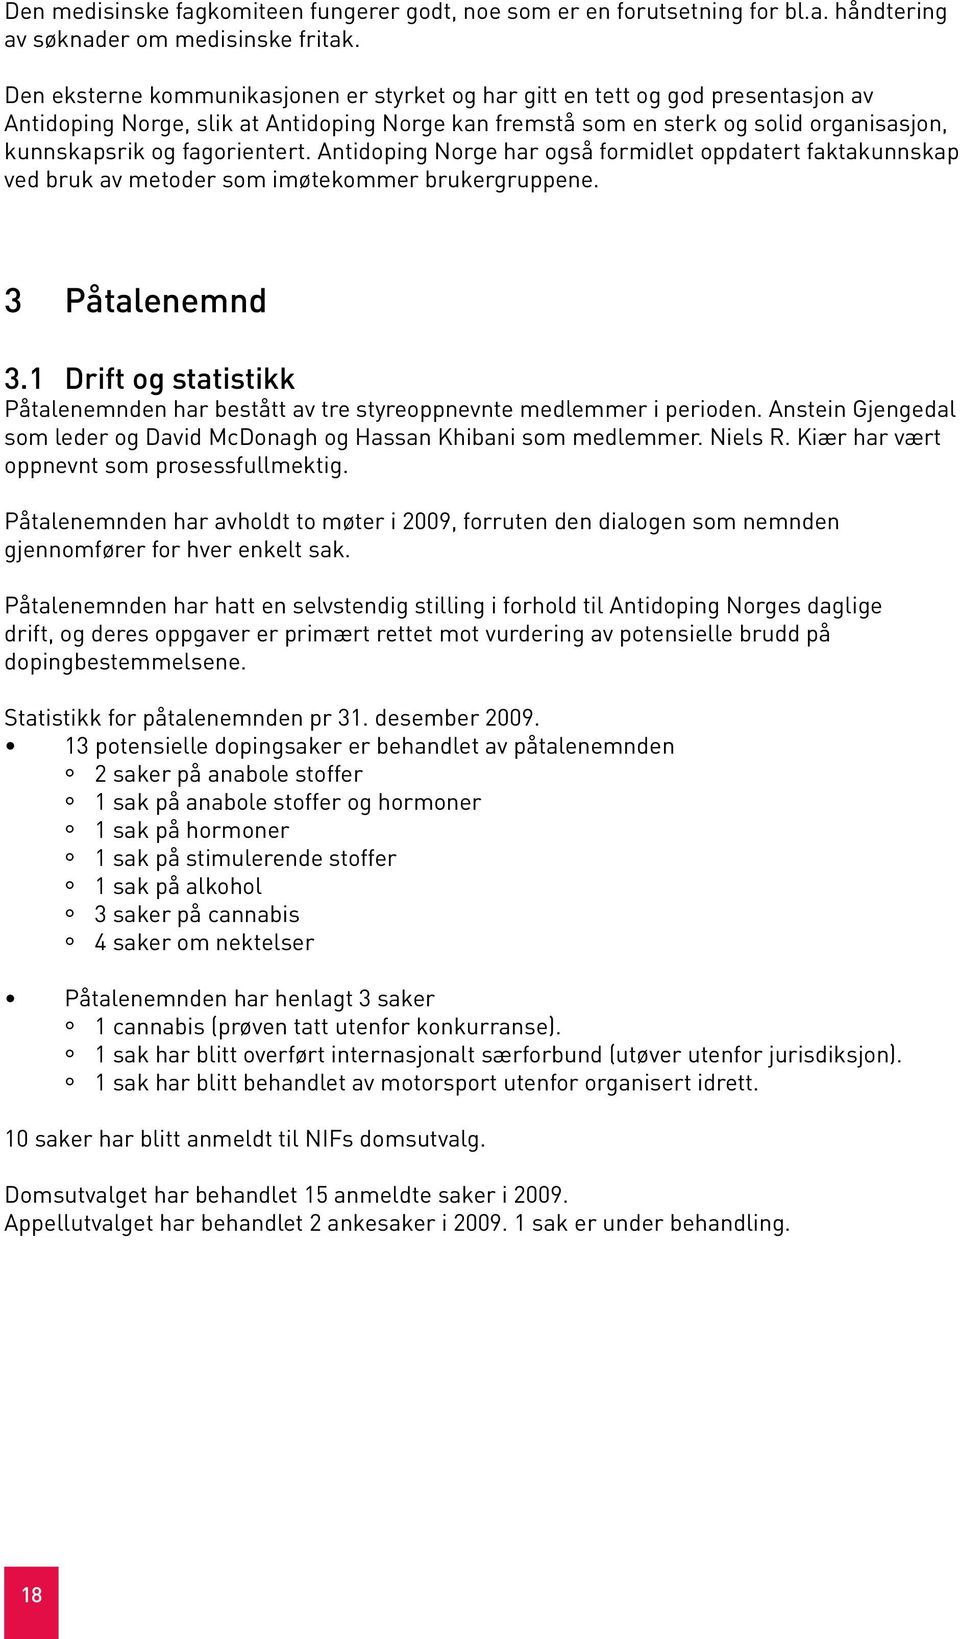 fagorientert. Antidoping Norge har også formidlet oppdatert faktakunnskap ved bruk av metoder som imøtekommer brukergruppene. 3 Påtalenemnd 3.